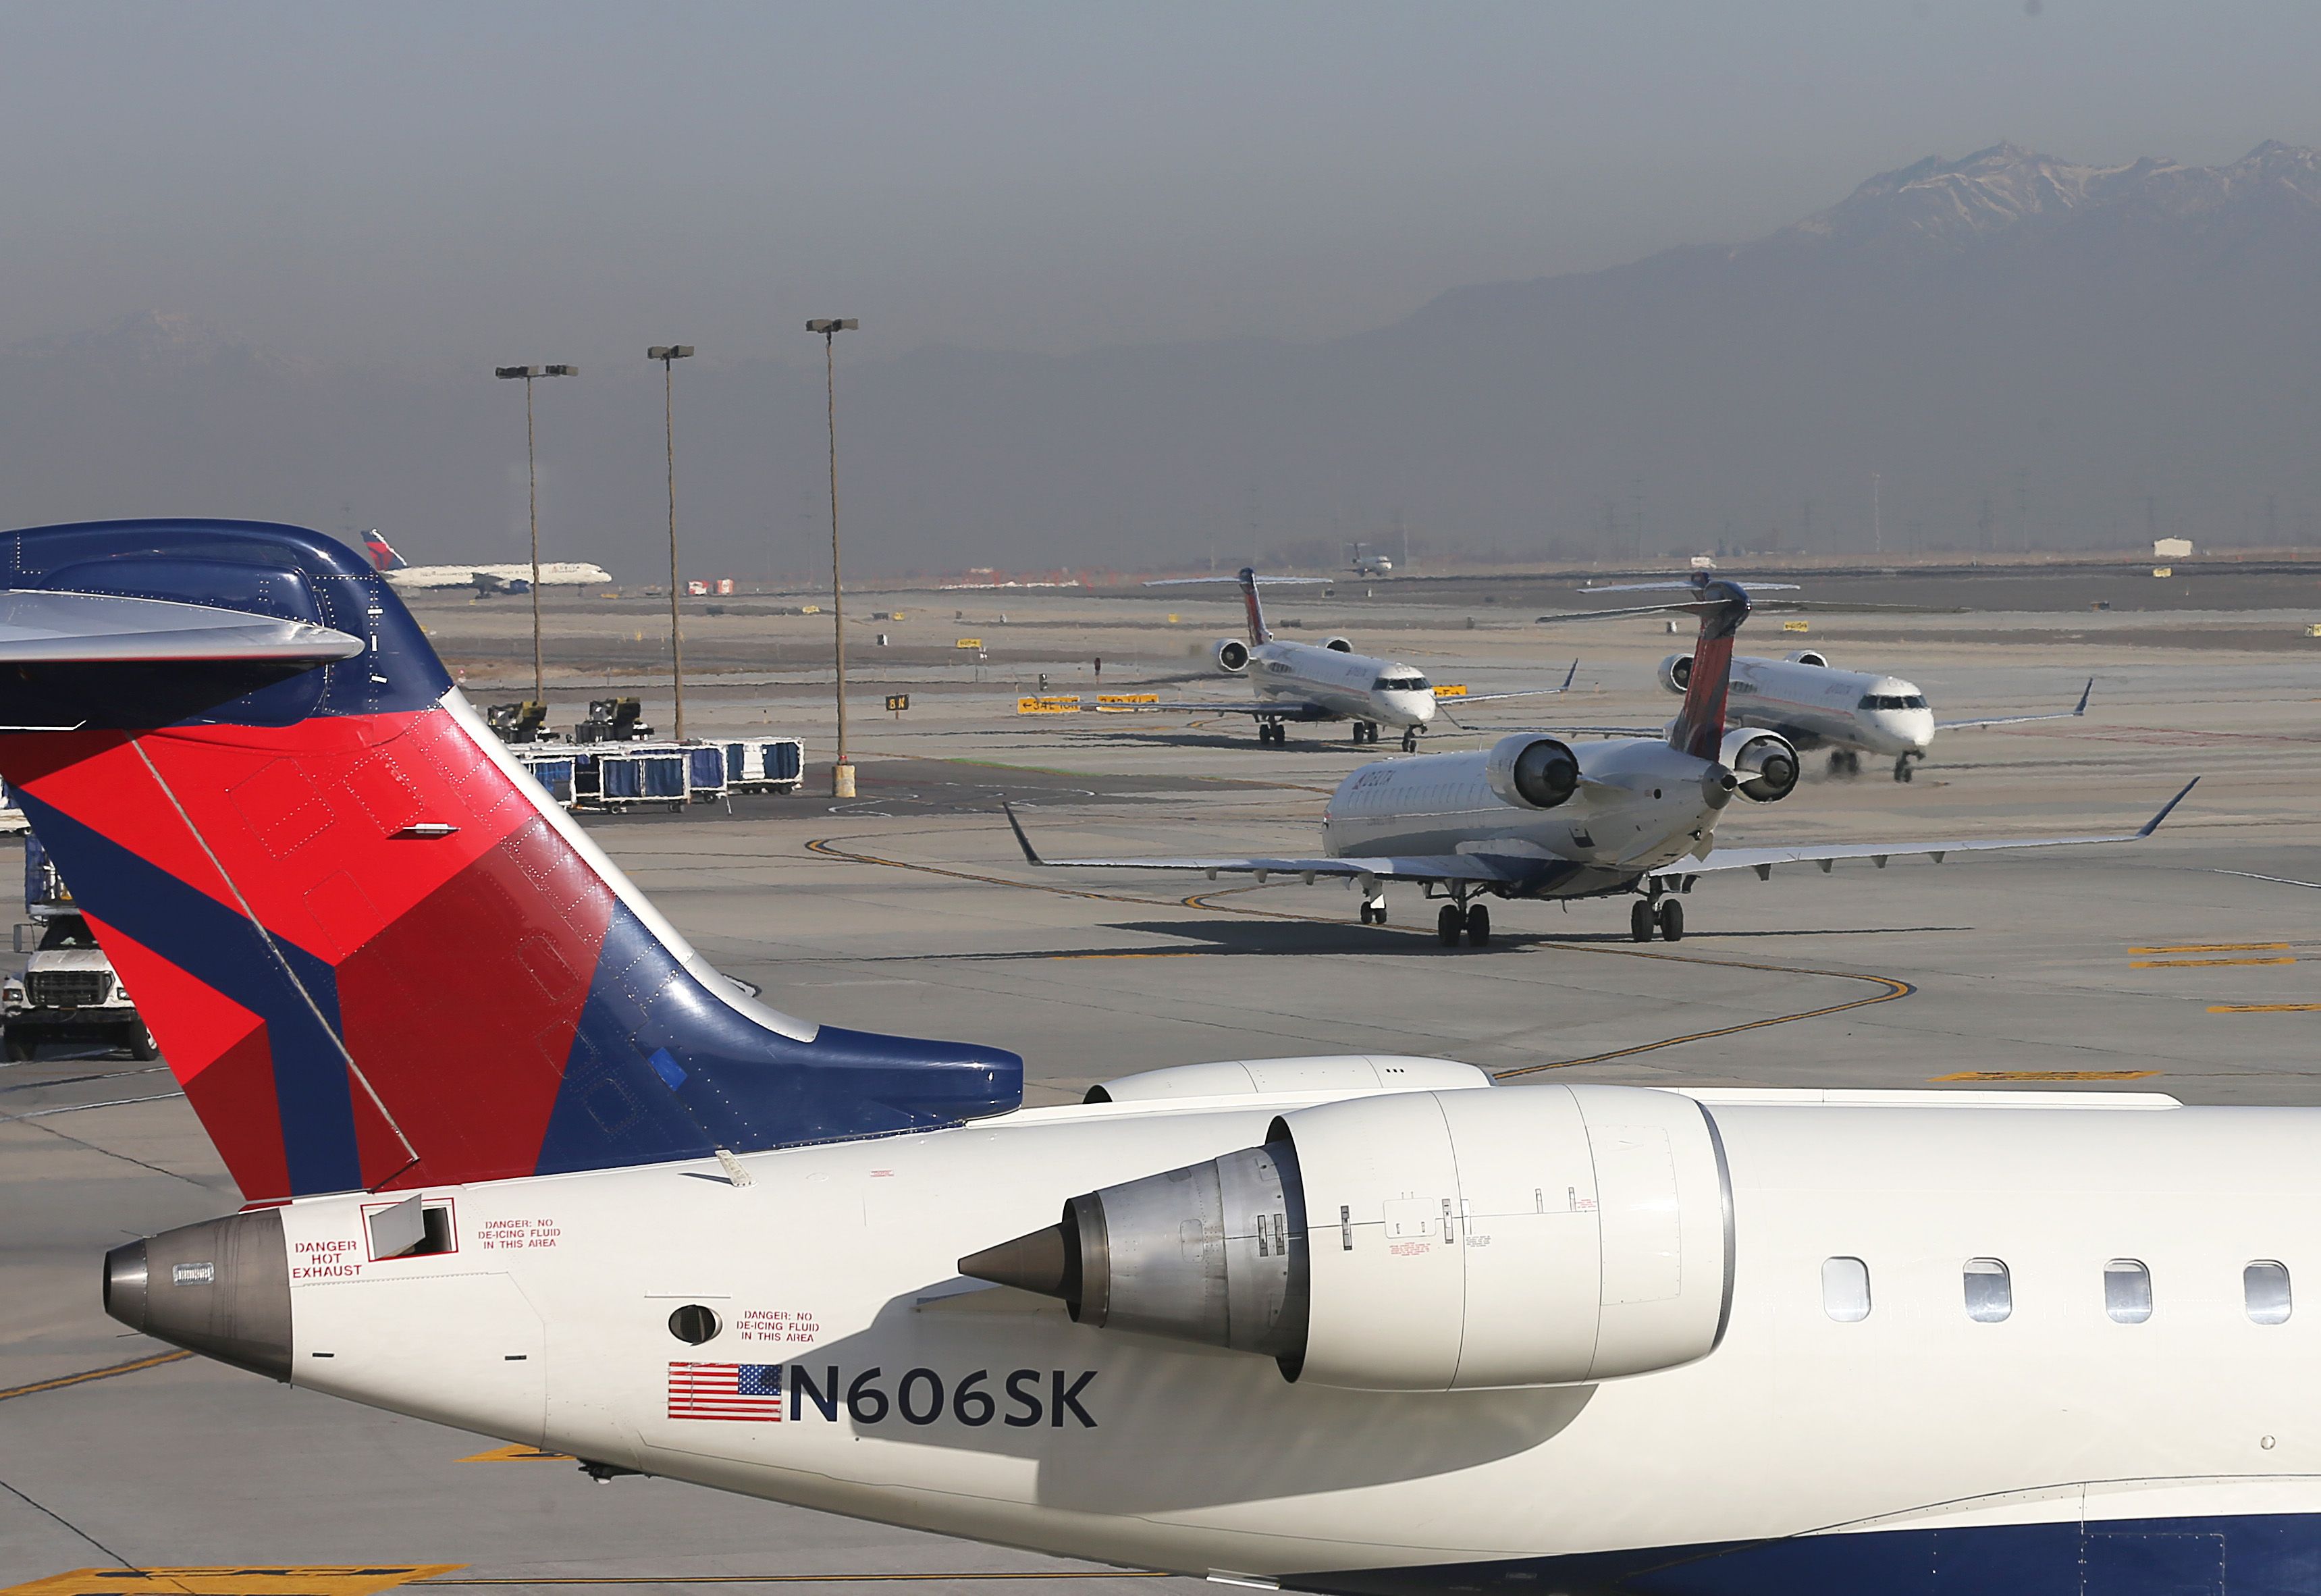 Delta Air Lines CRJ aircraft on tarmac at Salt Lake City Airport